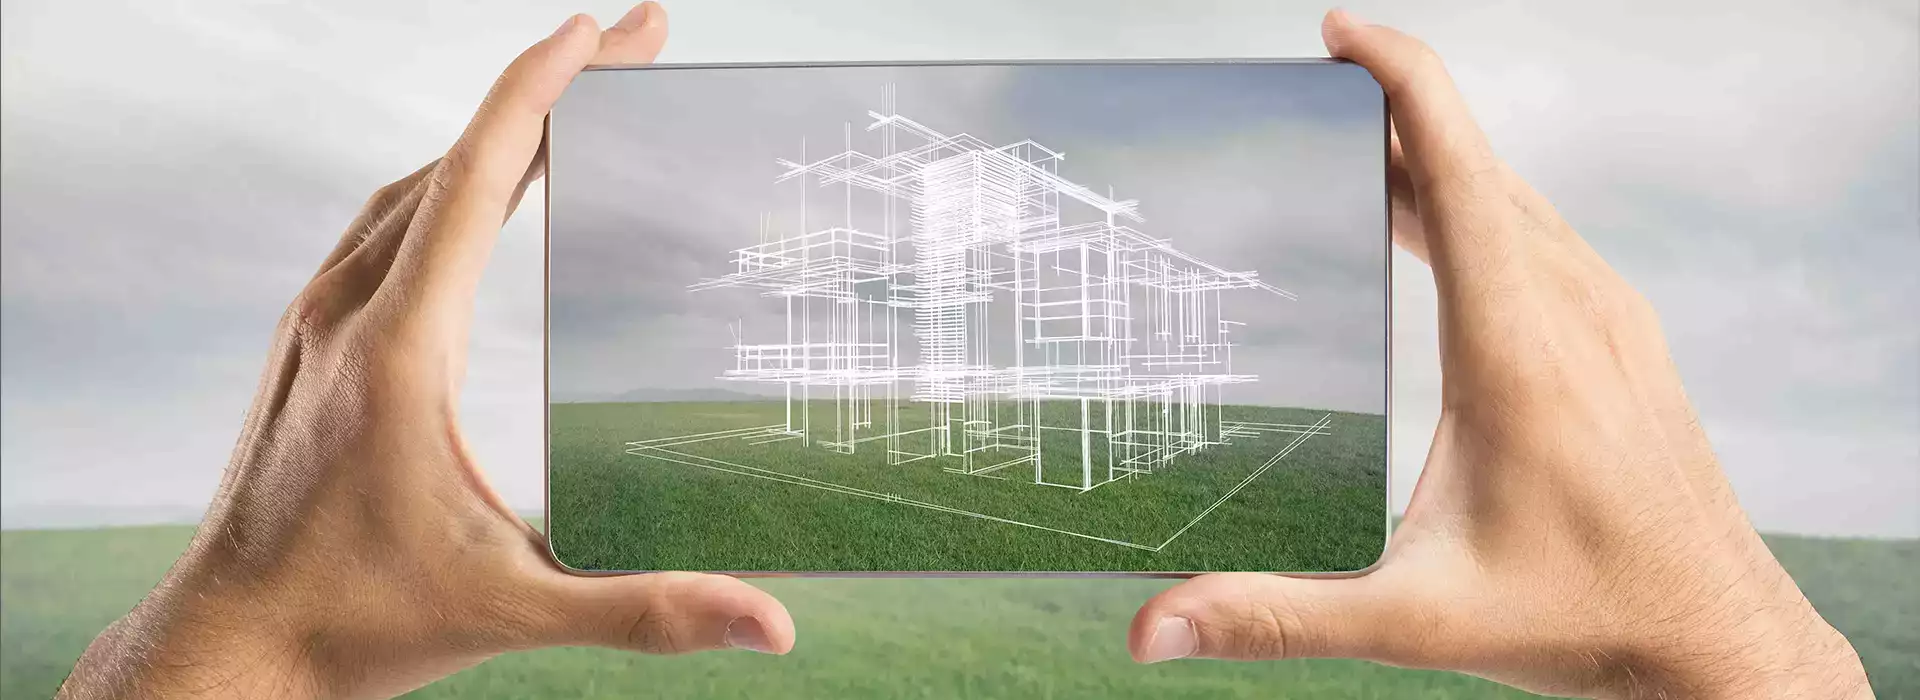 Imagen de manos sujetando un móvil con un boceto de un alzado de edificio en la pantalla